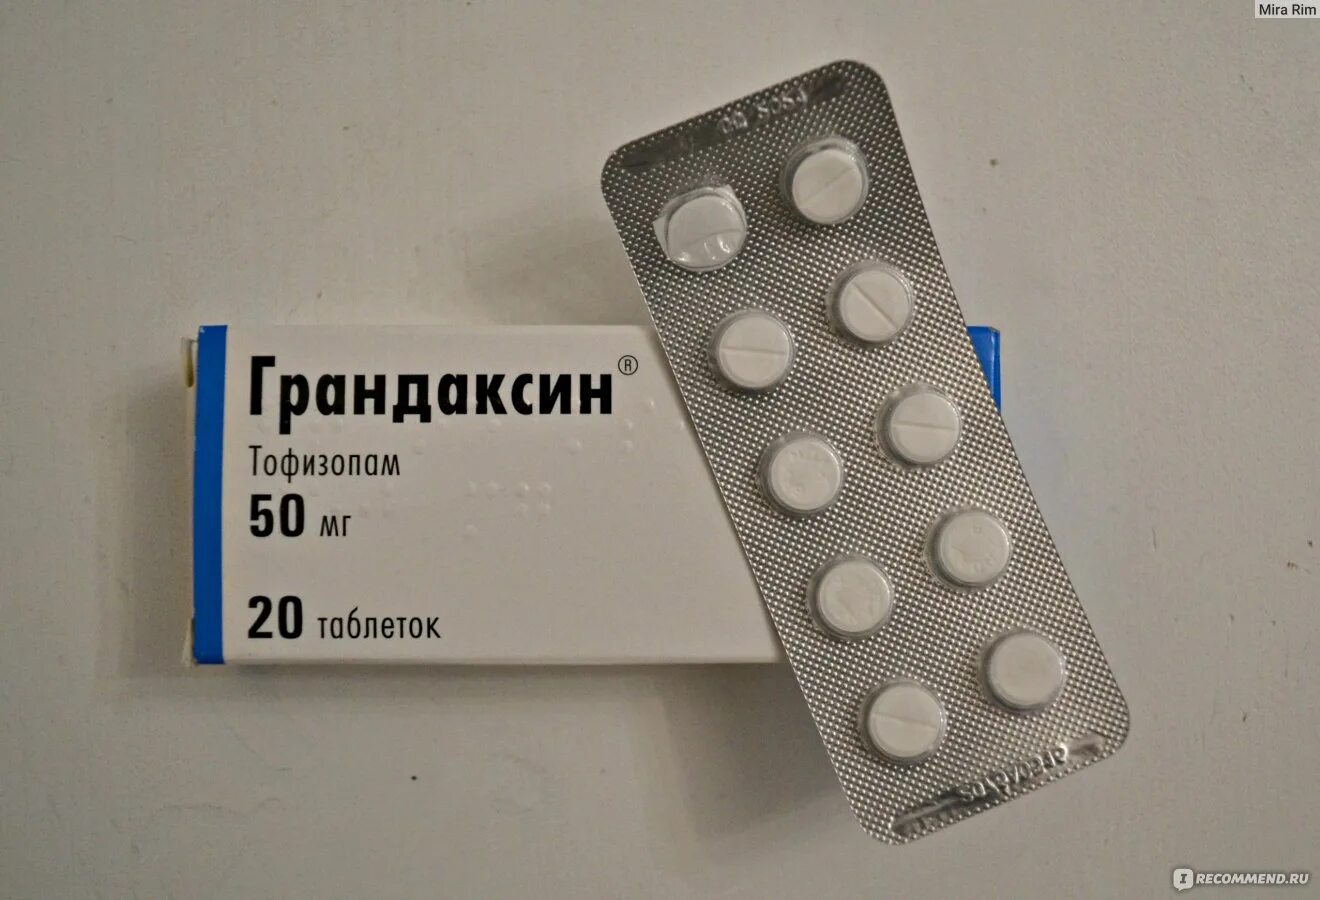 Грандаксин 50 мг. Грандаксин 10 мг. Грандаксин (таб. 50мг n60 Вн ) Egis-Венгрия. Тофизопам грандаксин.